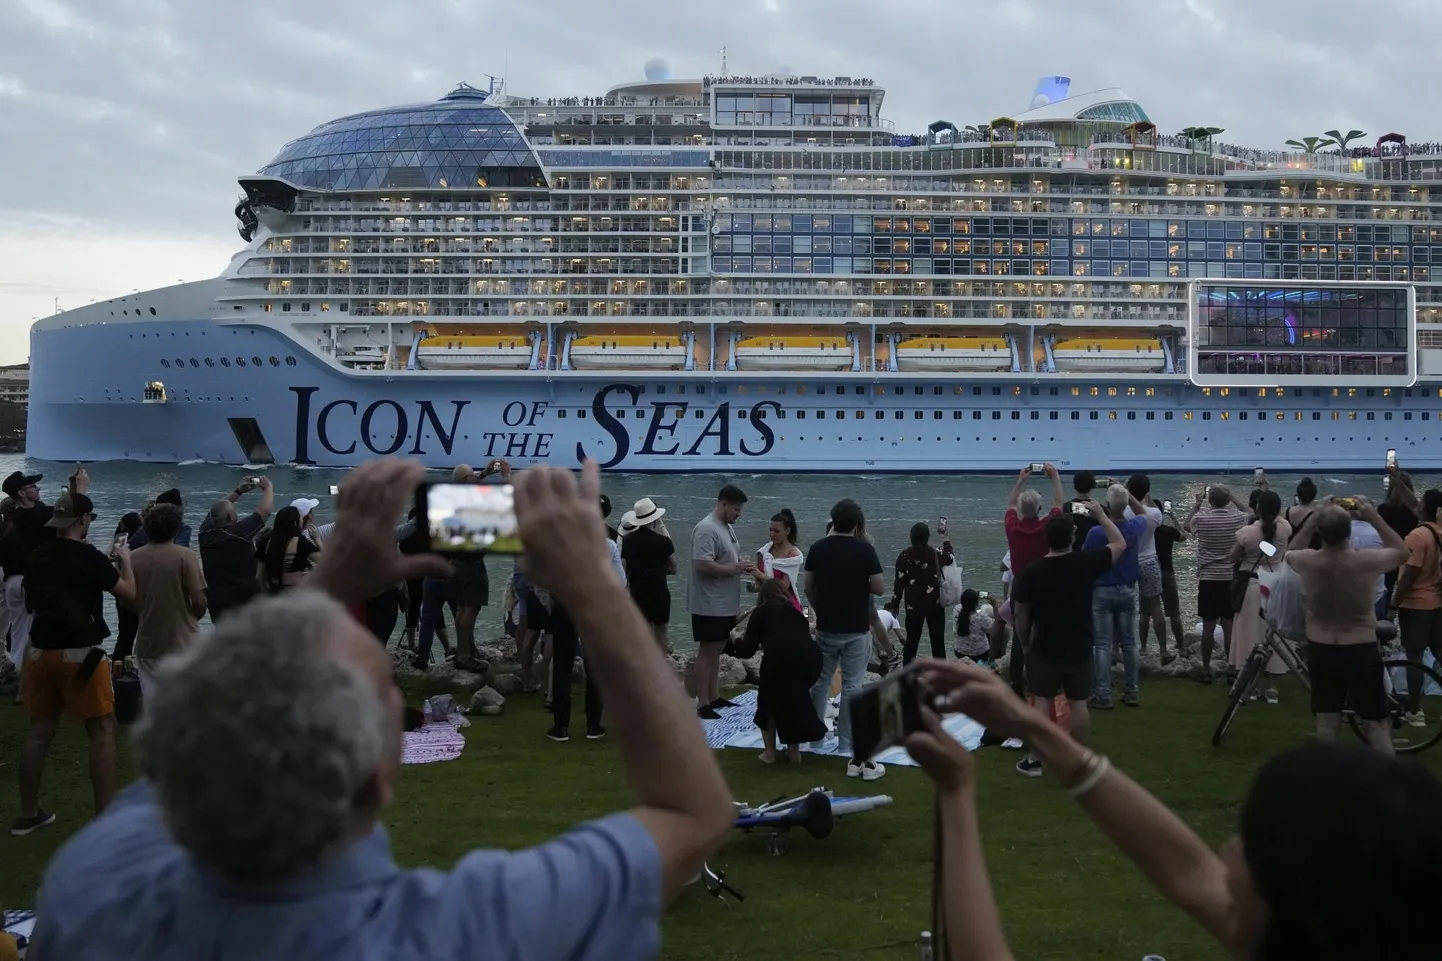 Maailma suurim kruiisilaev Icon of the Seas seilas oma esimesele reisile Miami sadamast (Florida) selle aasta 27. jaanuaril.